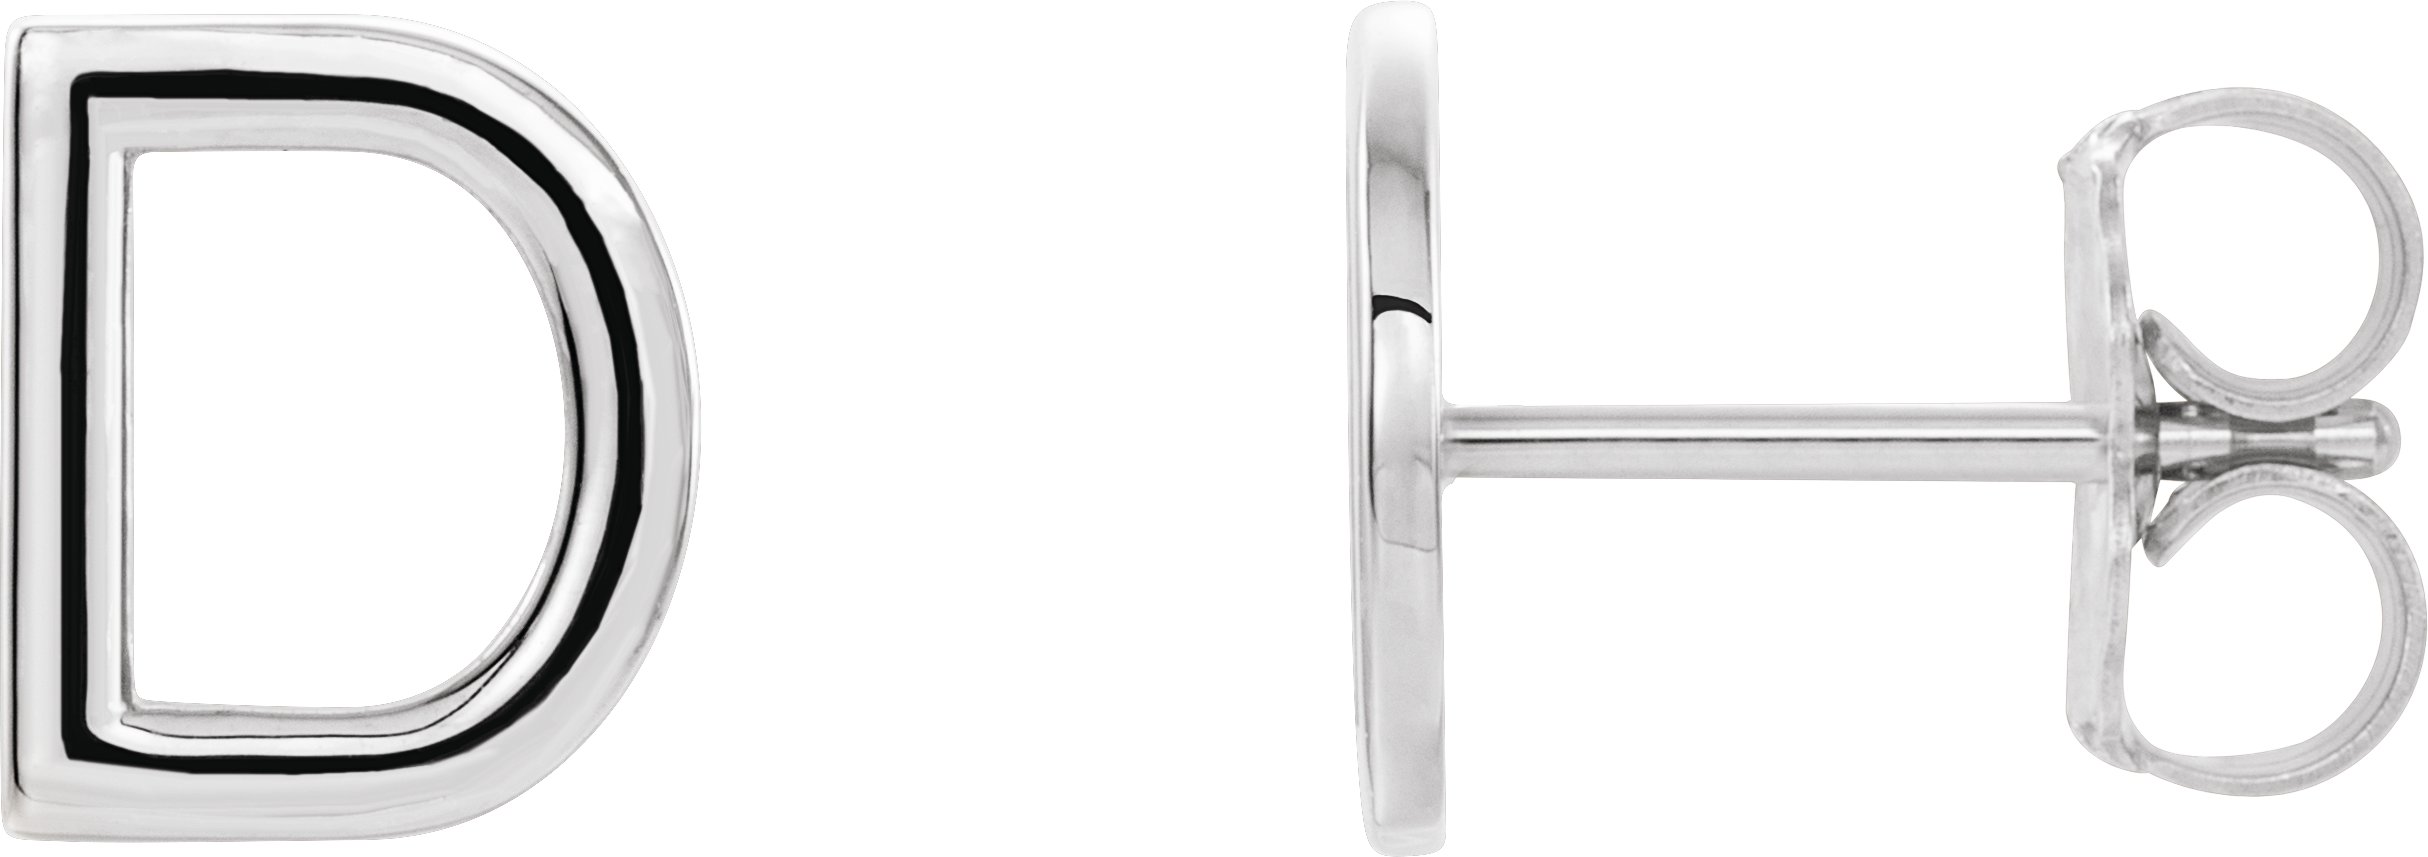 Sterling Silver Single Initial D Earring Ref. 14382956